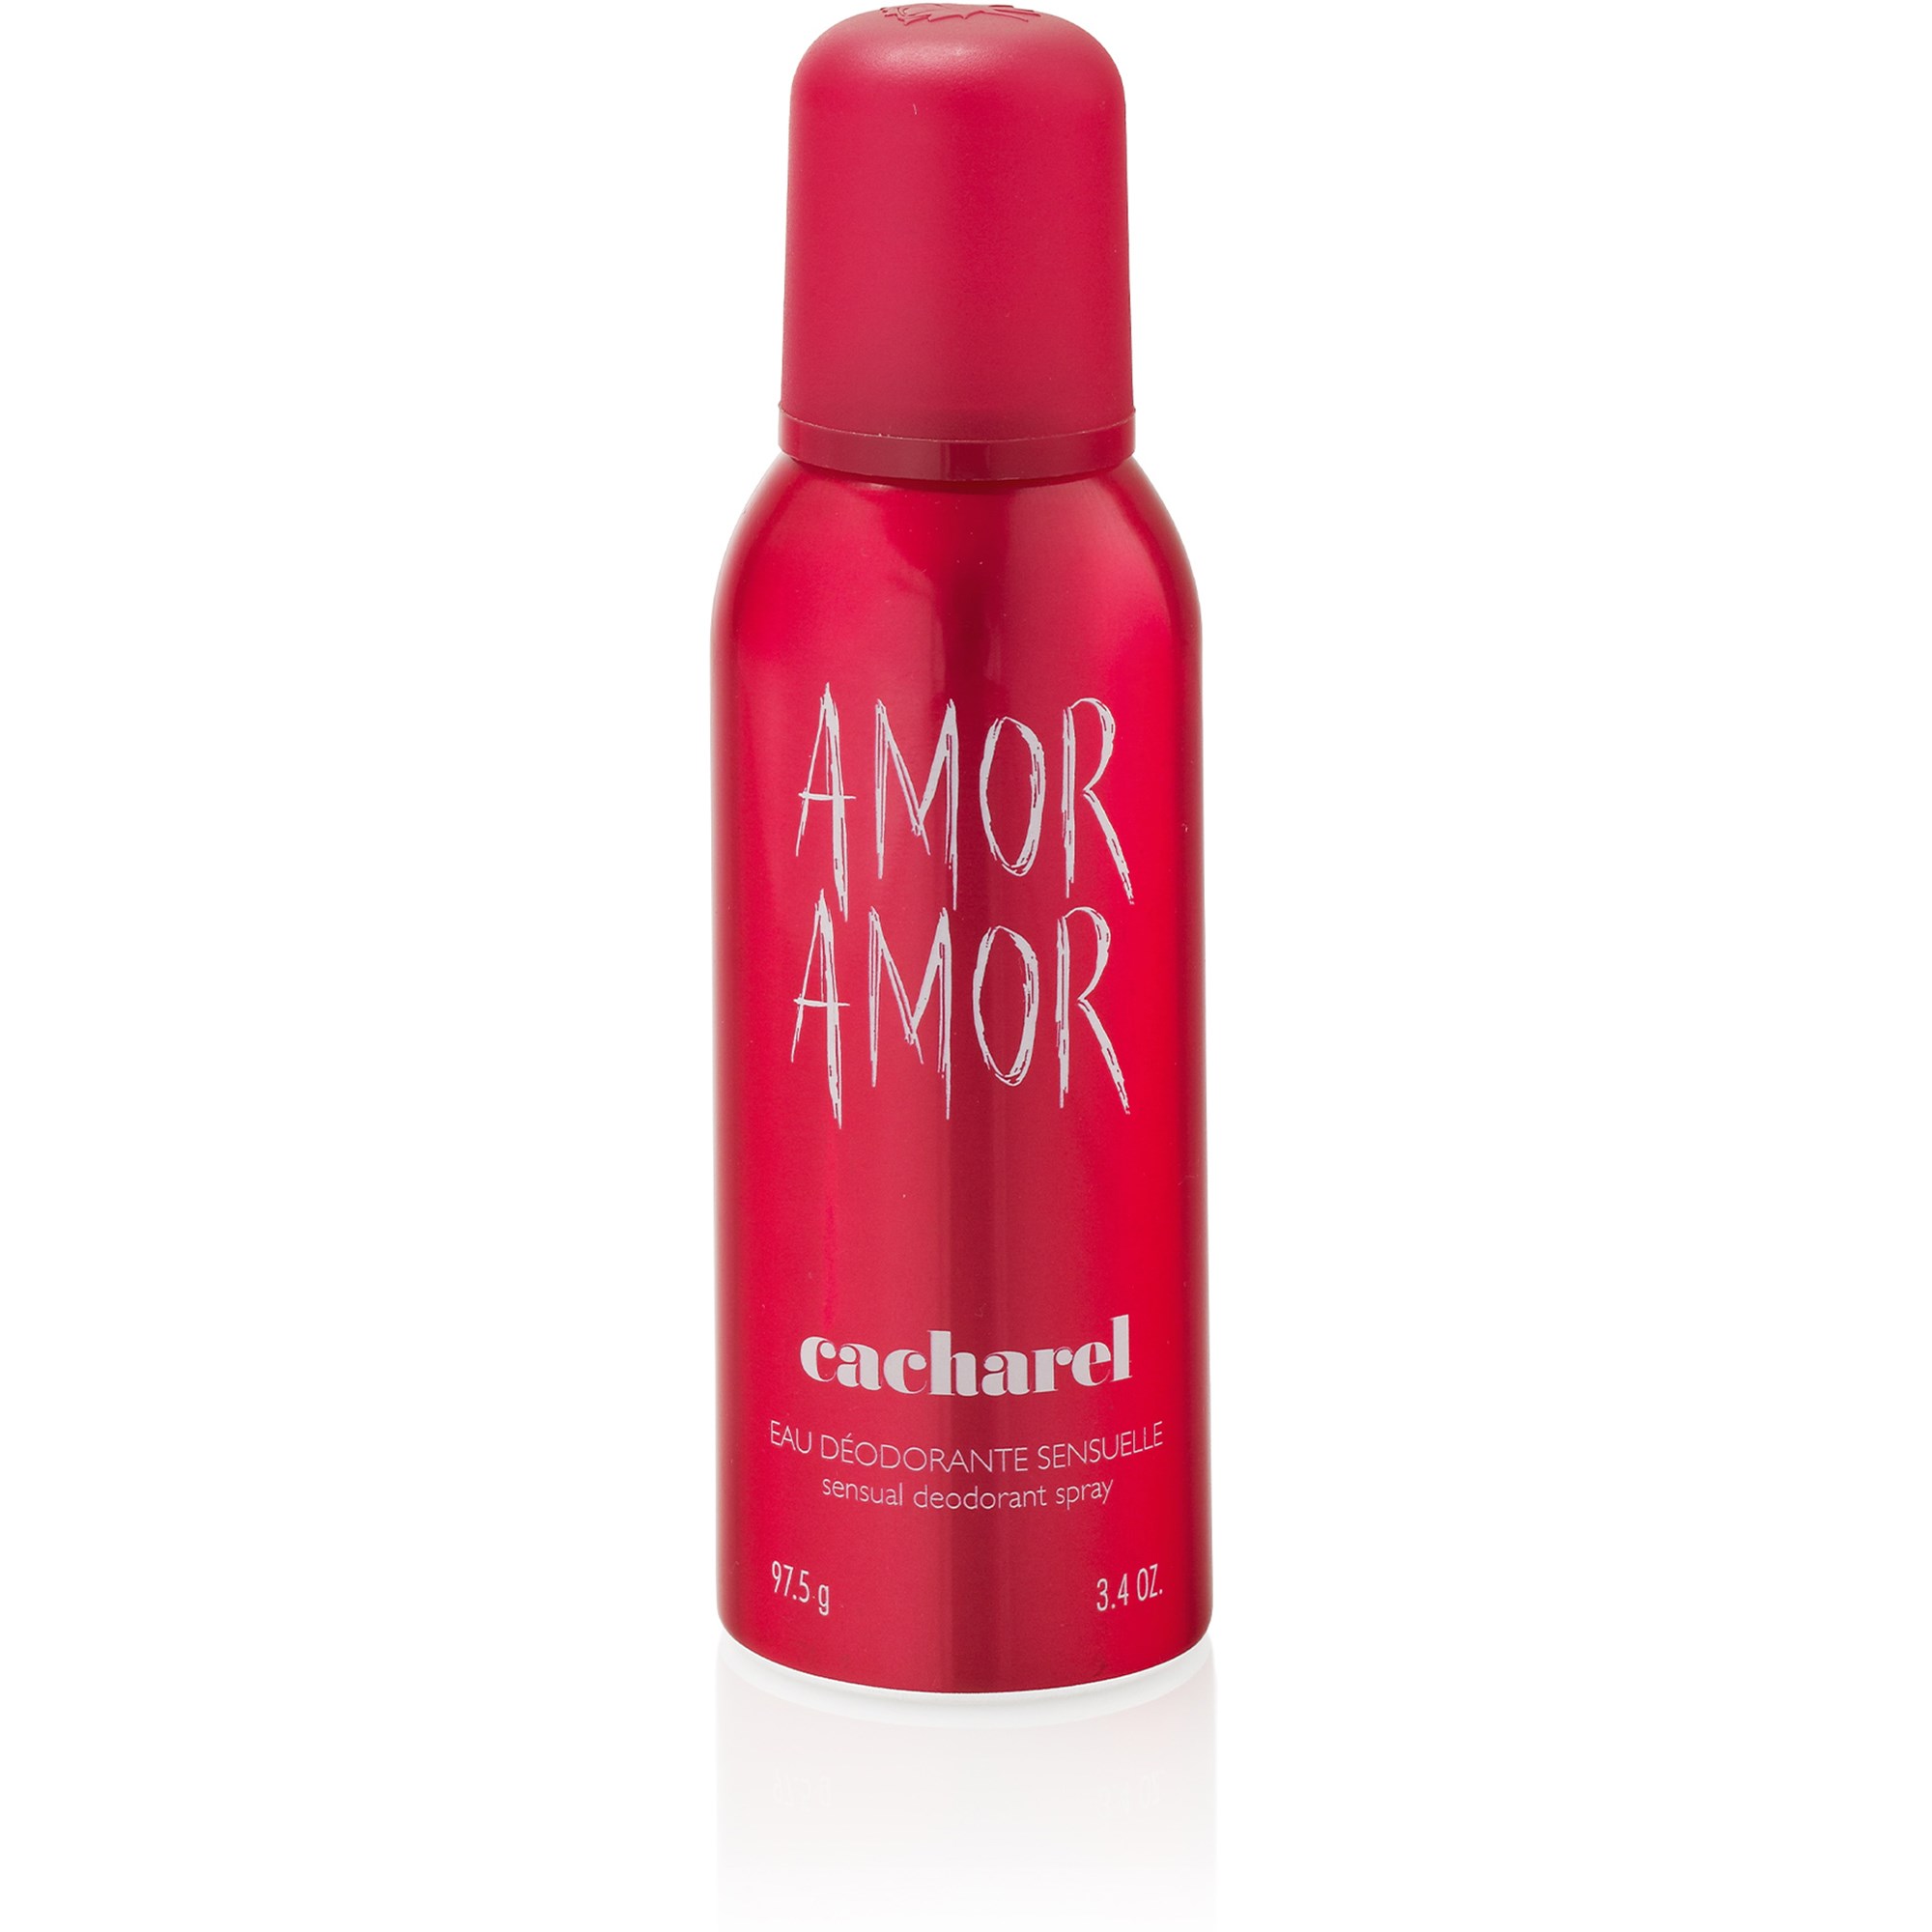 Bilde av Cacharel Amor Amor Deodorant Spray 150 Ml